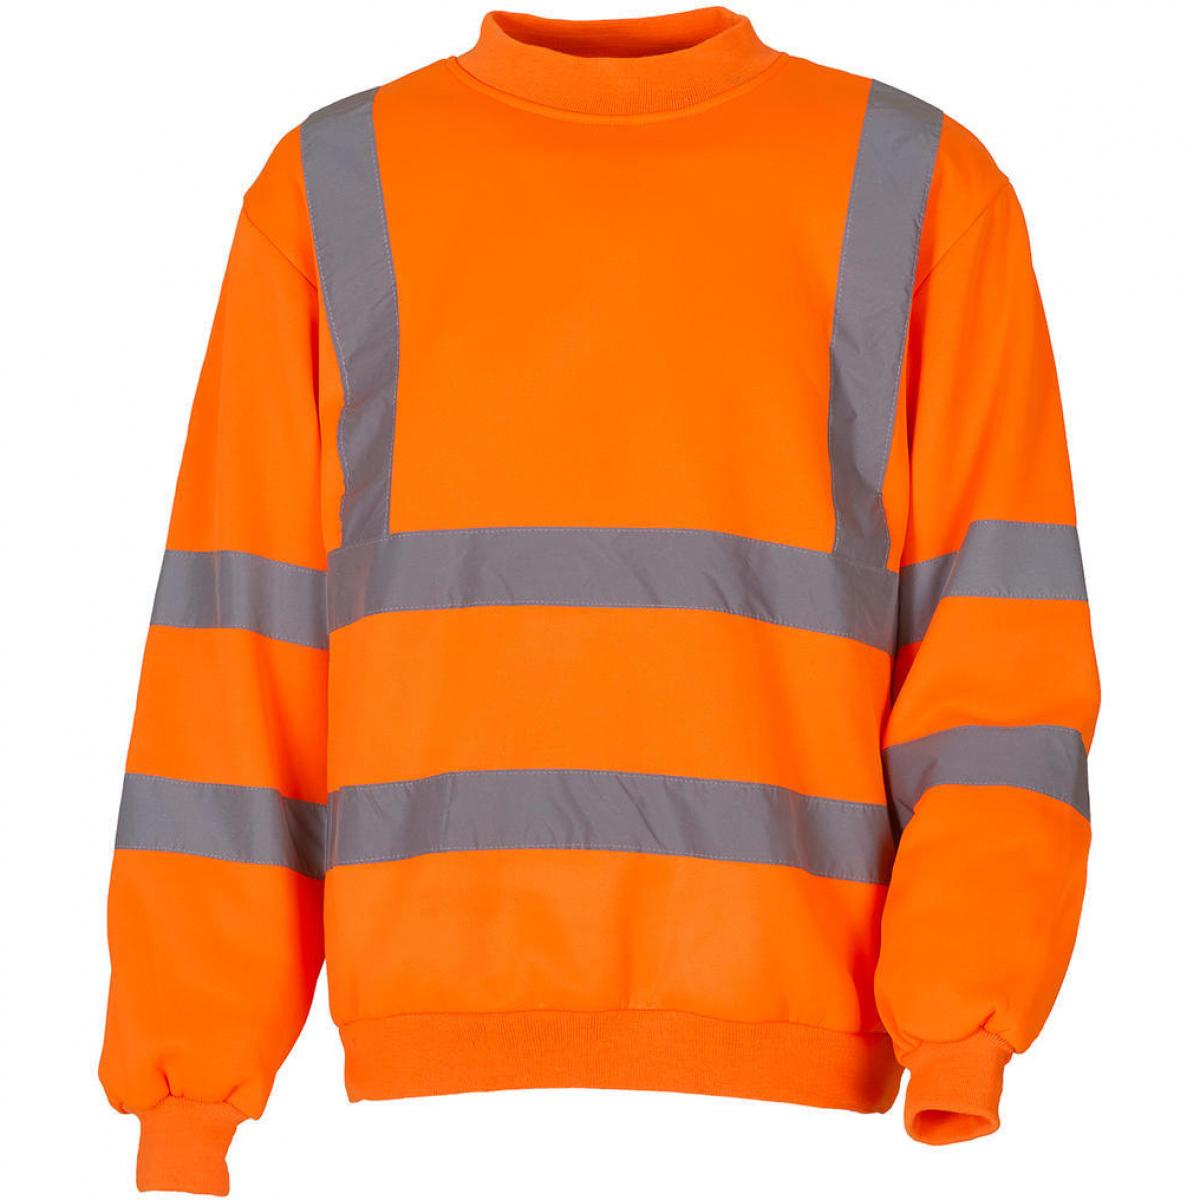 Hersteller: YOKO Herstellernummer: HVJ510 Artikelbezeichnung: Fluo Sweatshirt - HiVis Sicherheitssweatshirt Farbe: Fluo Orange